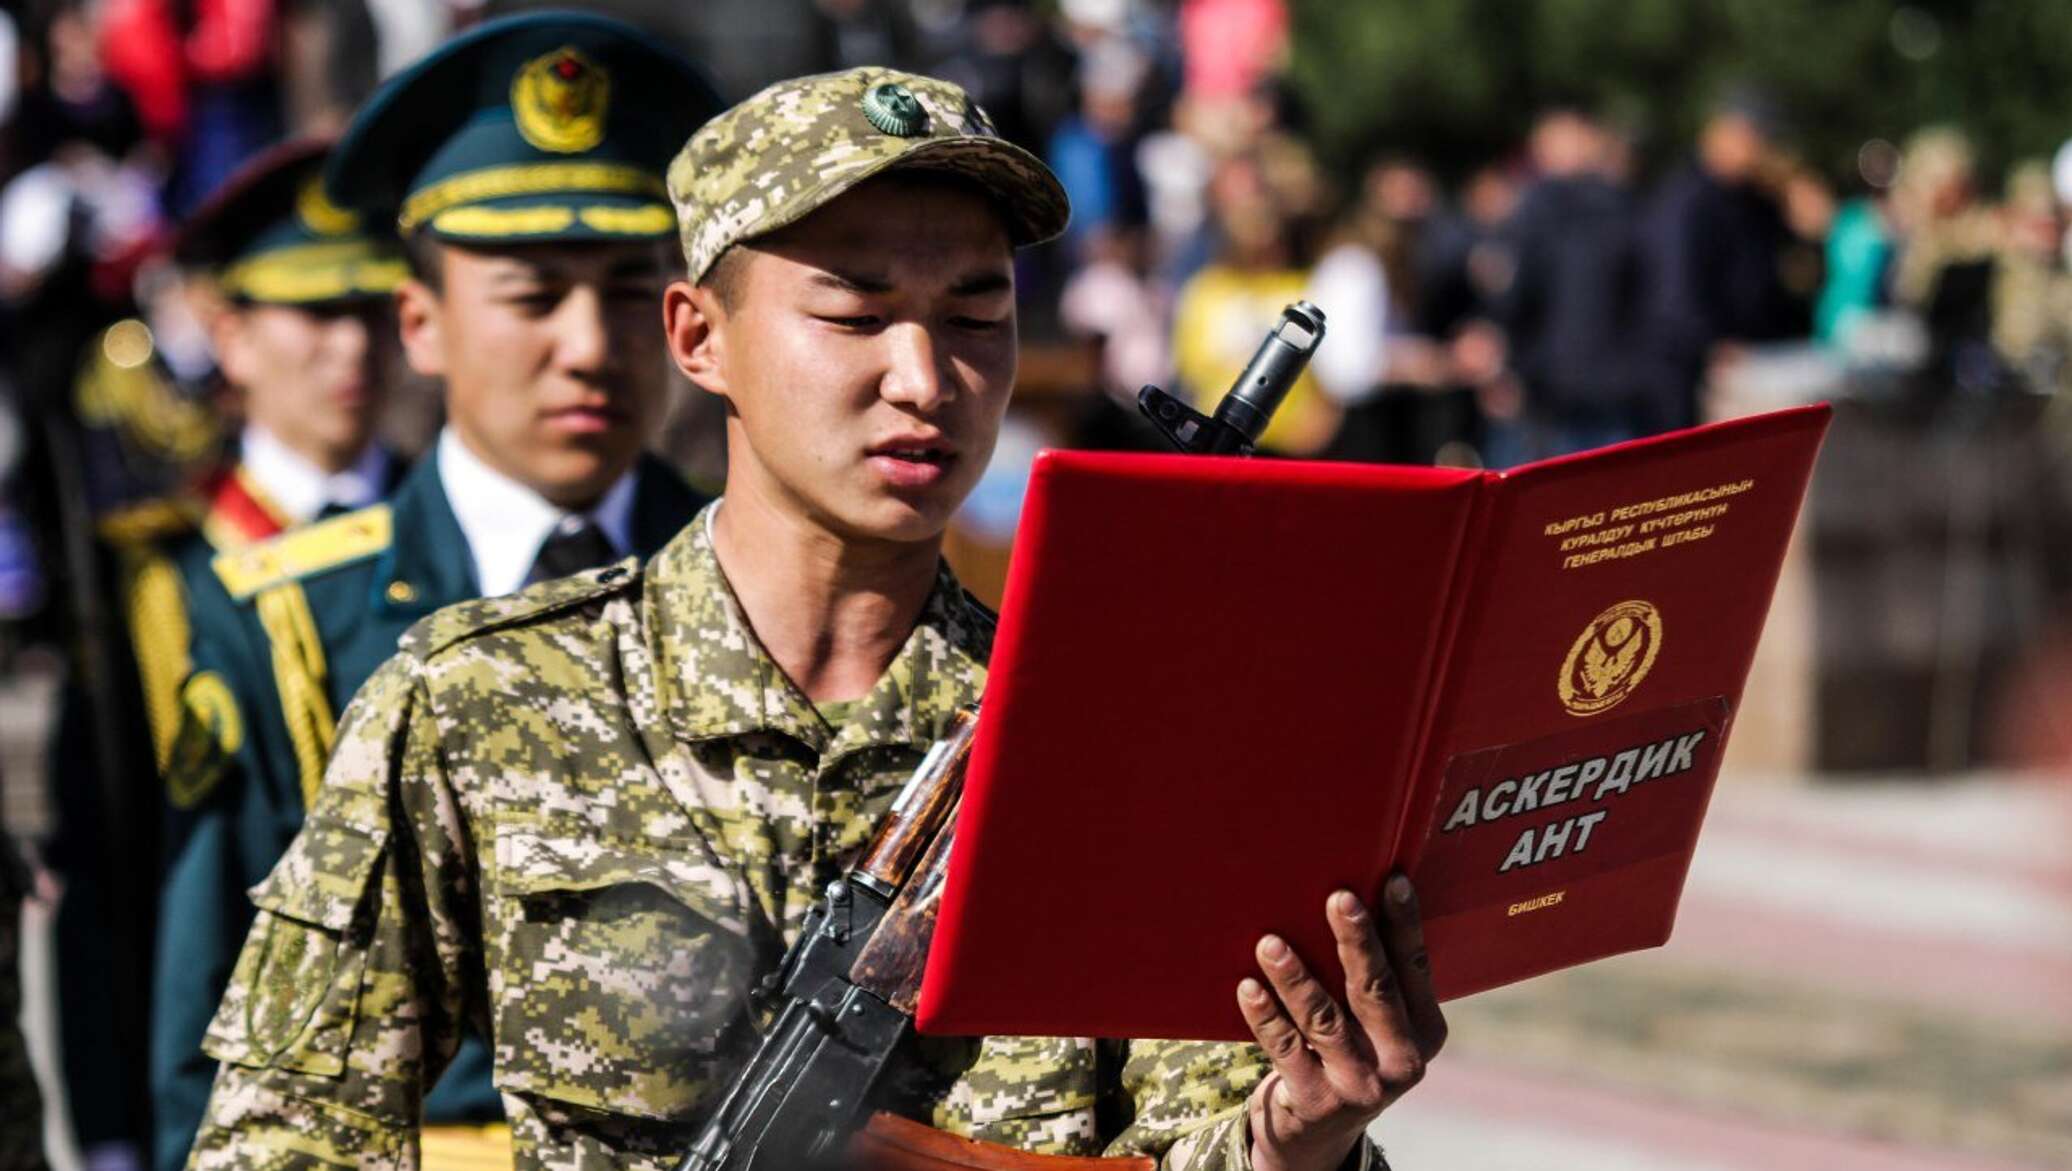 Кр вый. Присяга нац гвардия Кыргызстан. Аскердик ант. Солдаты Кыргызстана. Кыргызский солдат.